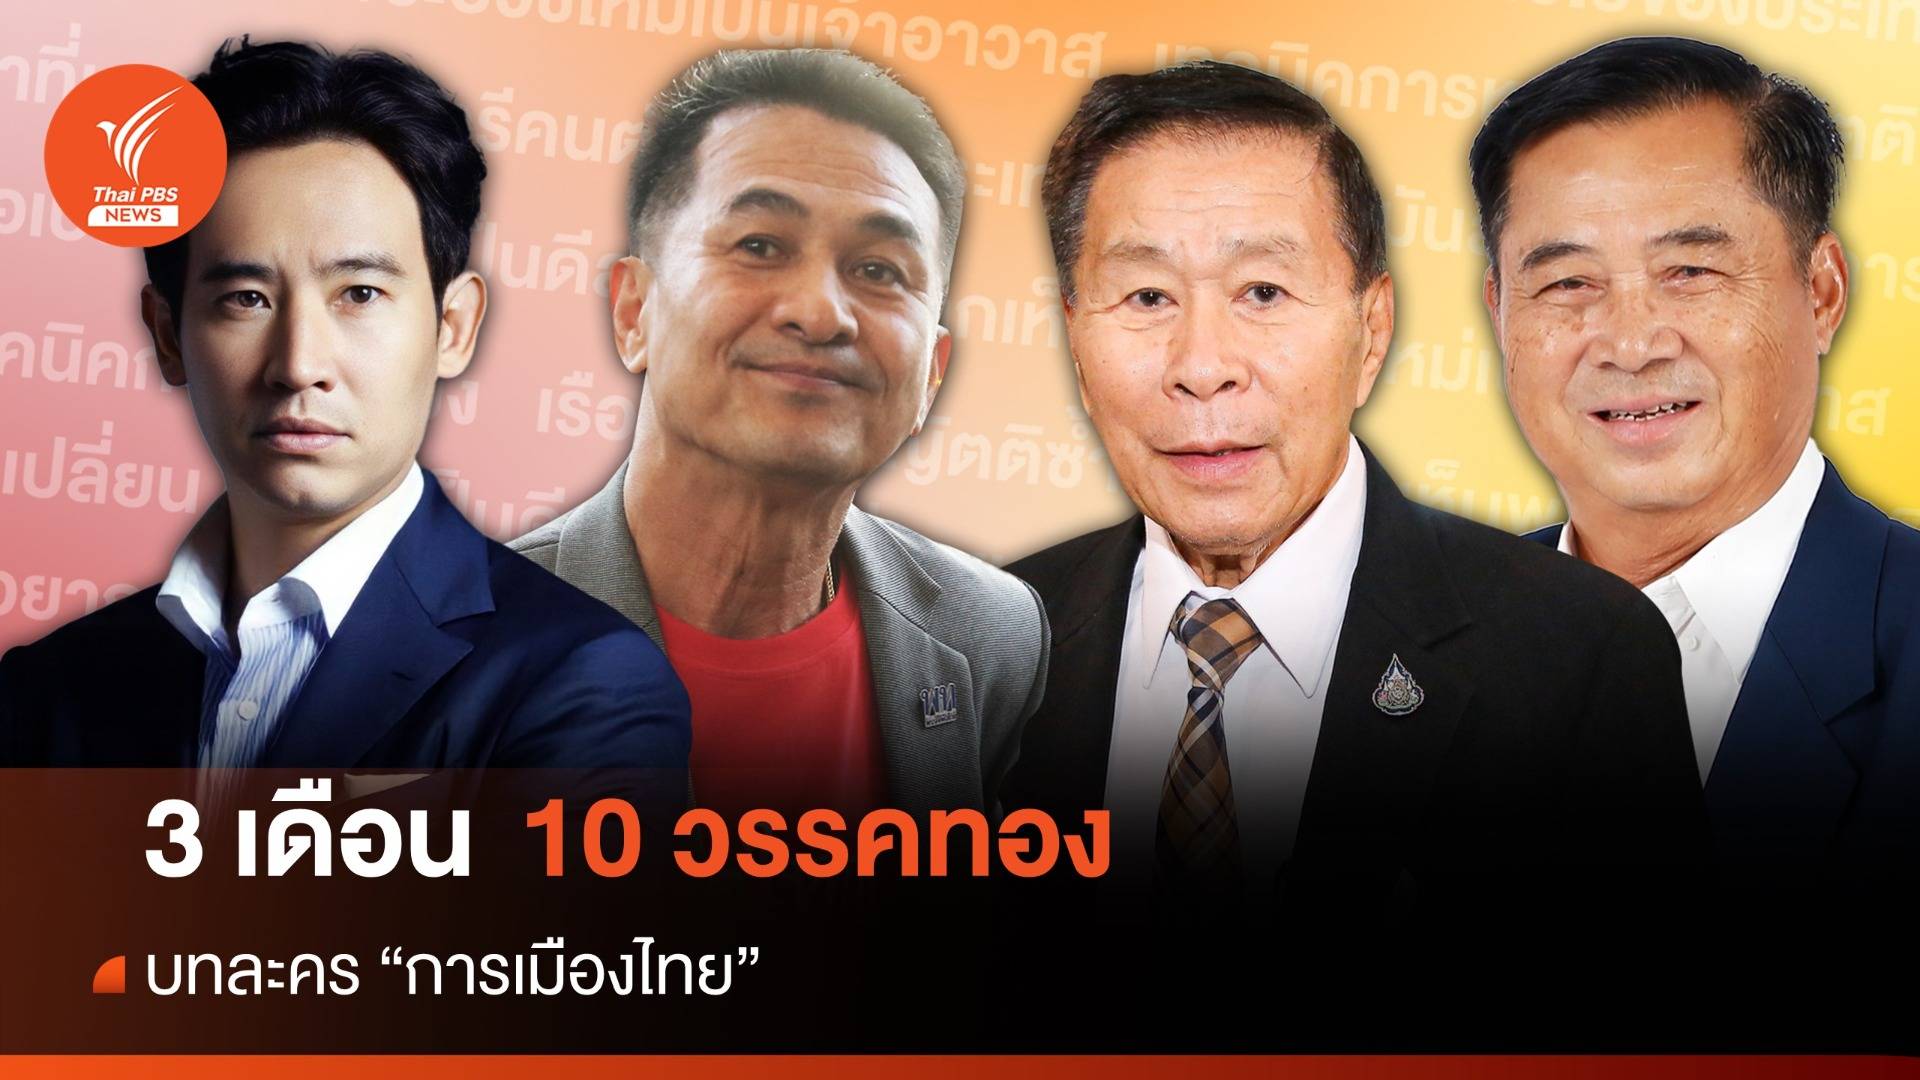 3 เดือน กับ 10 วรรคทอง ของนักการเมืองไทย